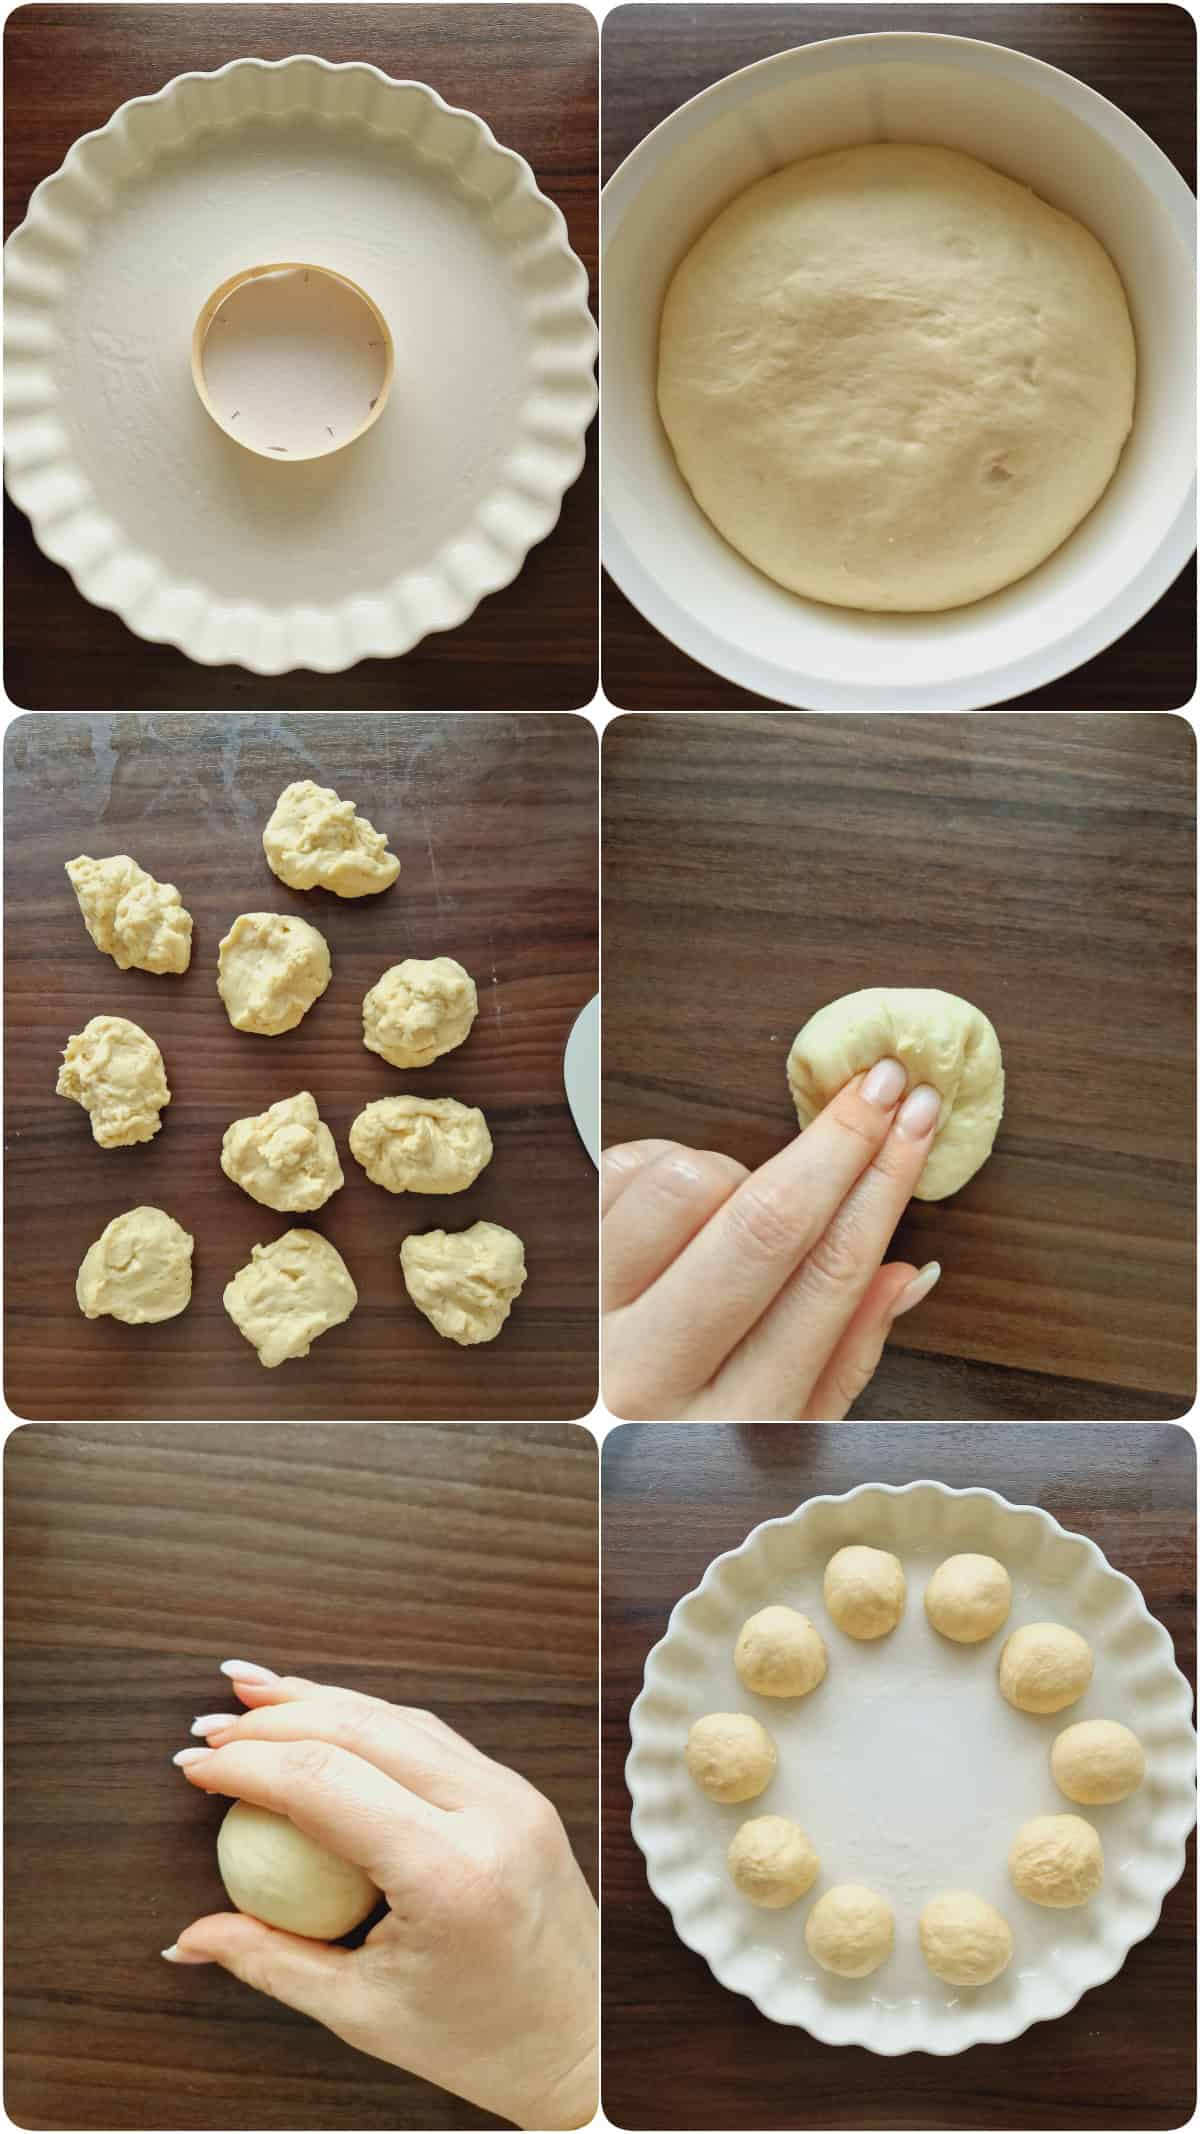 Eine Collage der Zubereitungsschritte für einen Brotkranz mit Camembert.